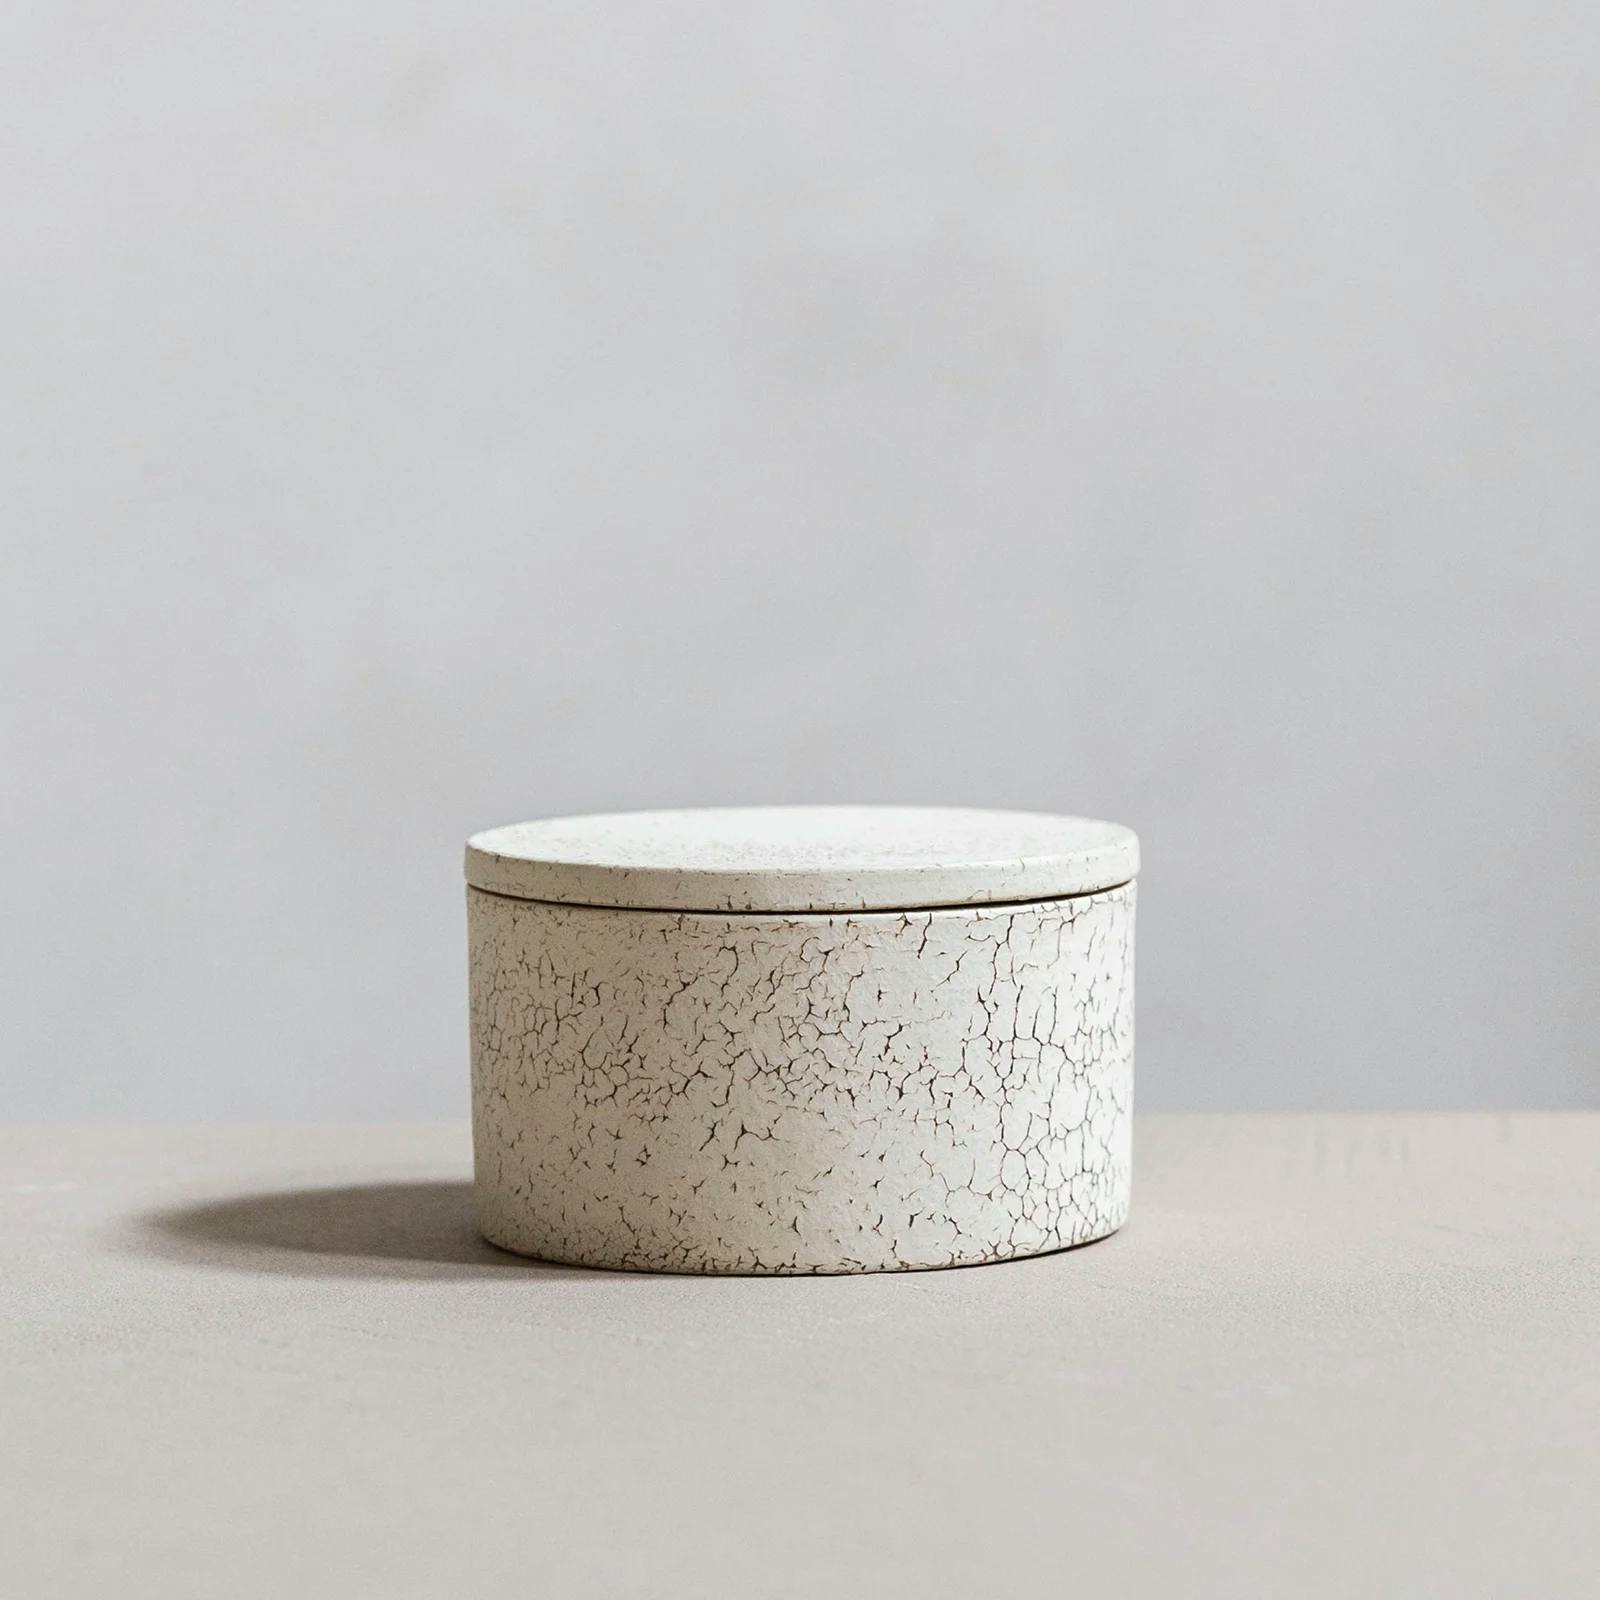 Image of ceramic pot